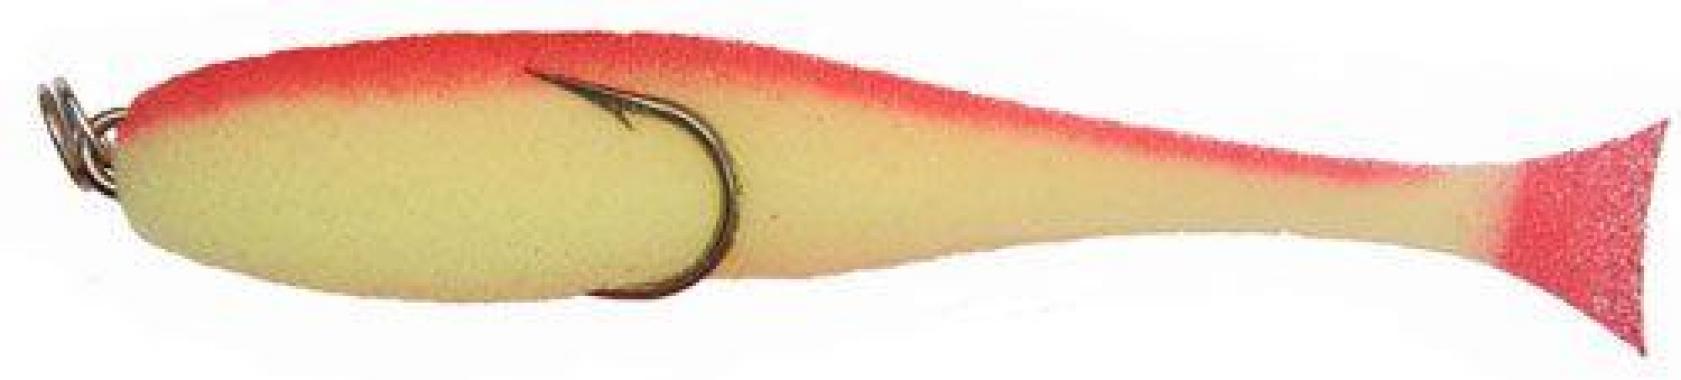 Поролоновая рыбка (двойник), 7см желто-красная